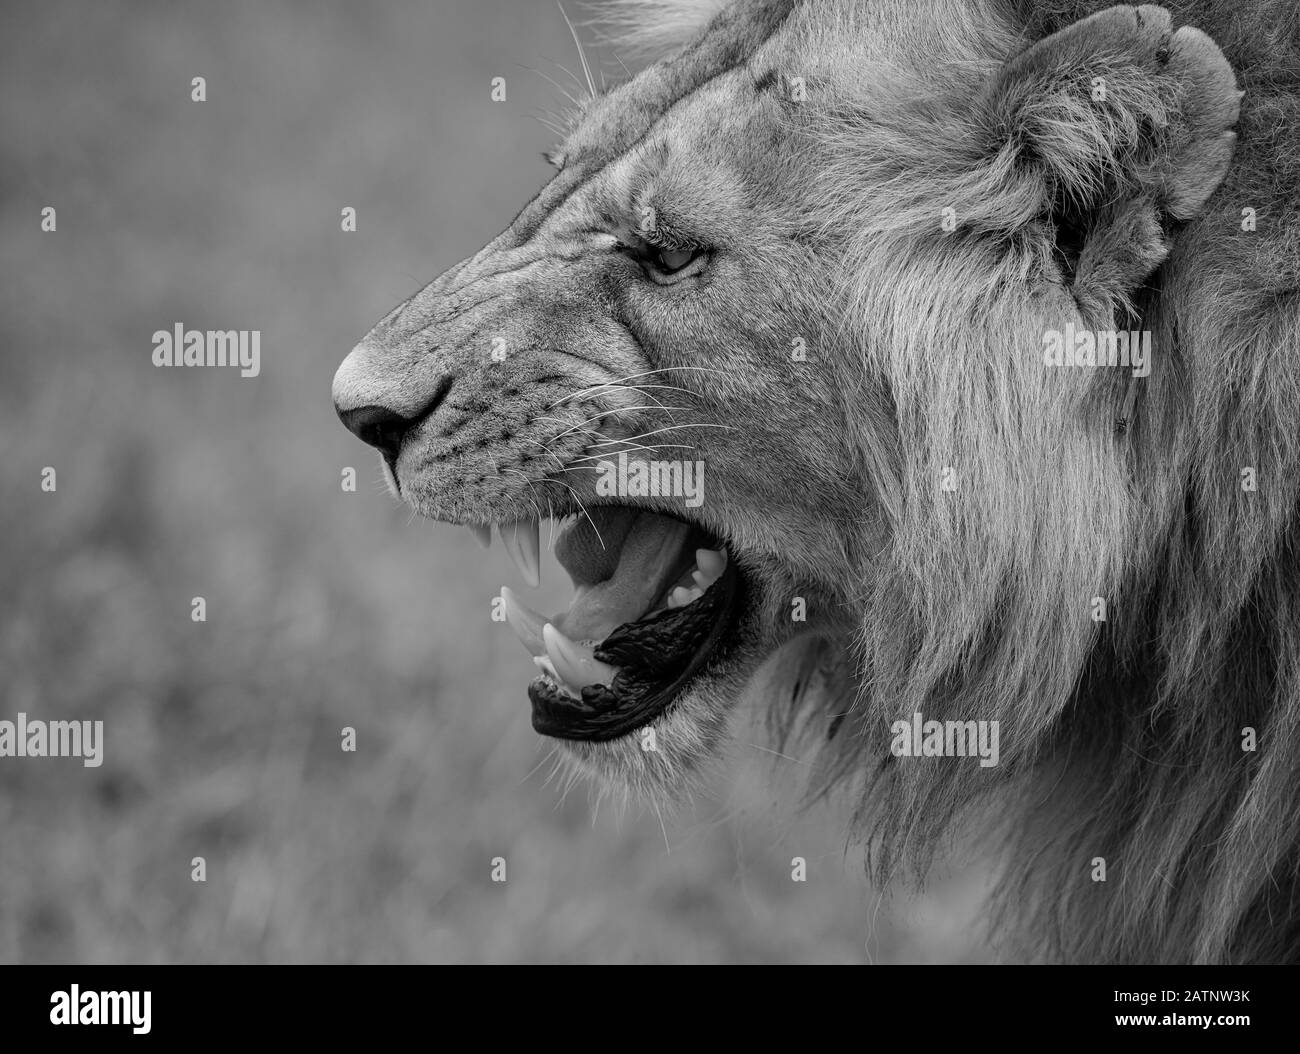 Retrato de leones, Panthera leo, tomado en el Masai Mara Conservancy, Kenia, África Foto de stock